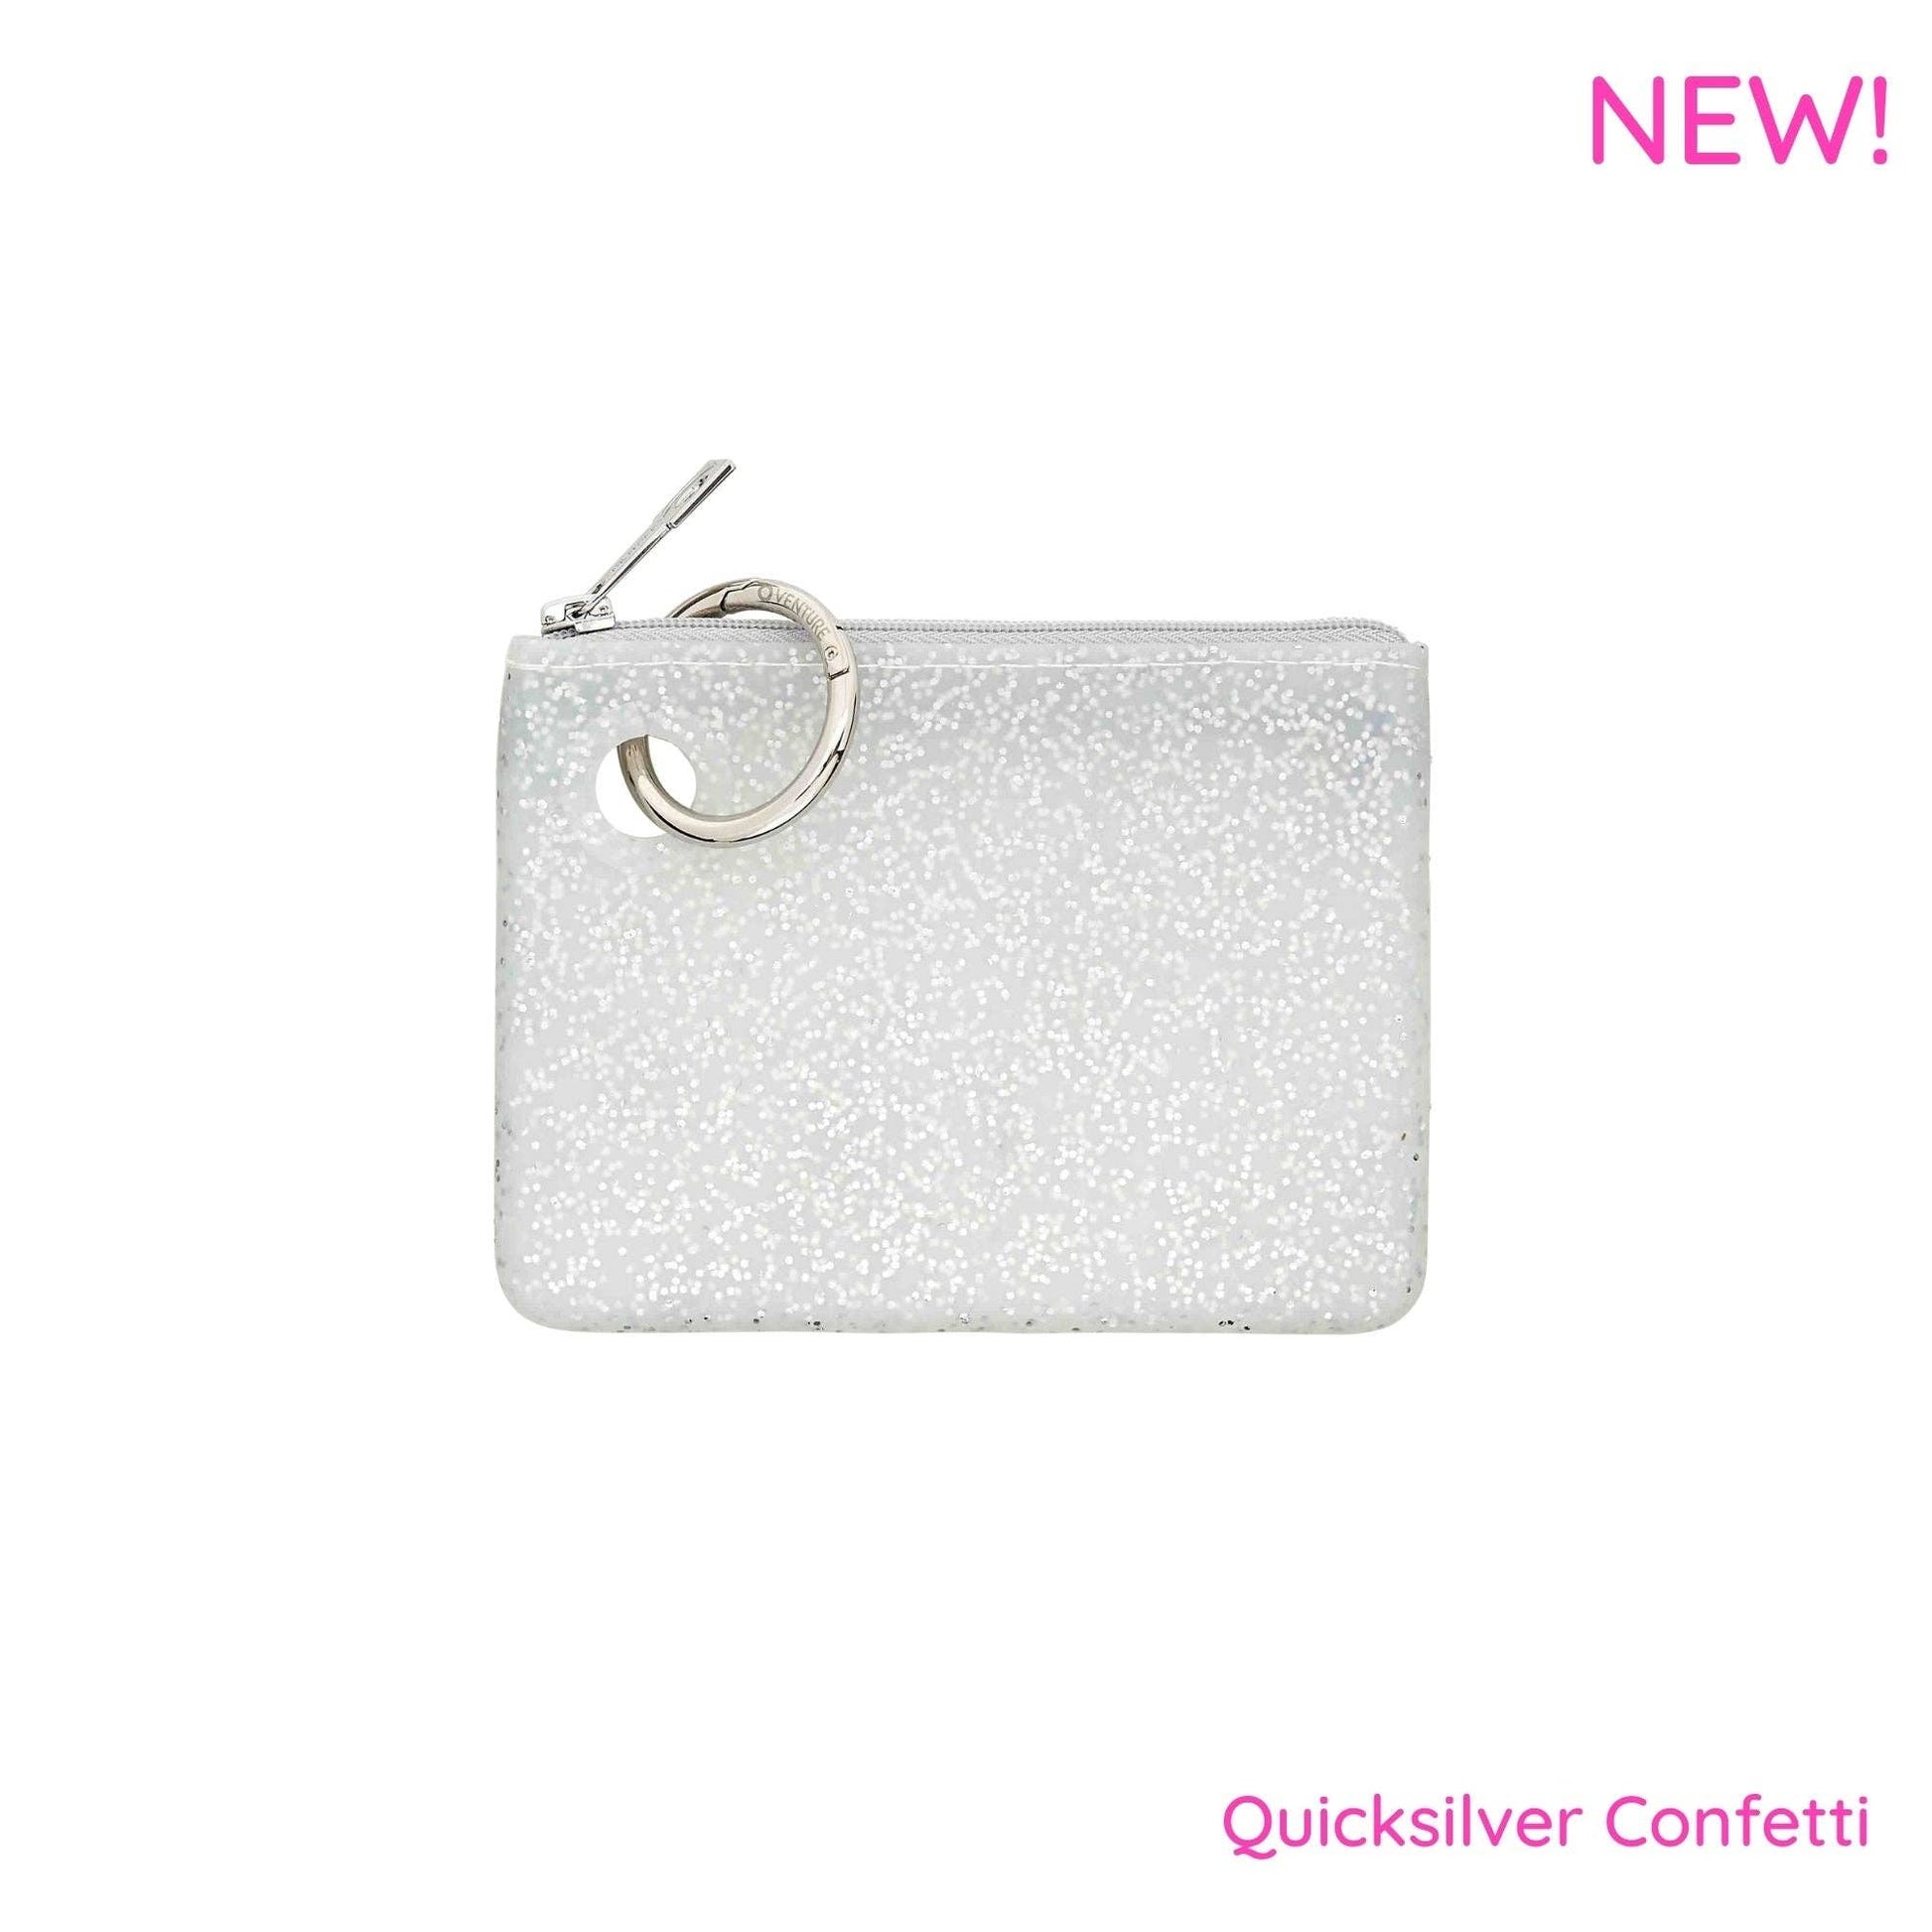 Quicksilver Confetti Mini Silicone Pouch